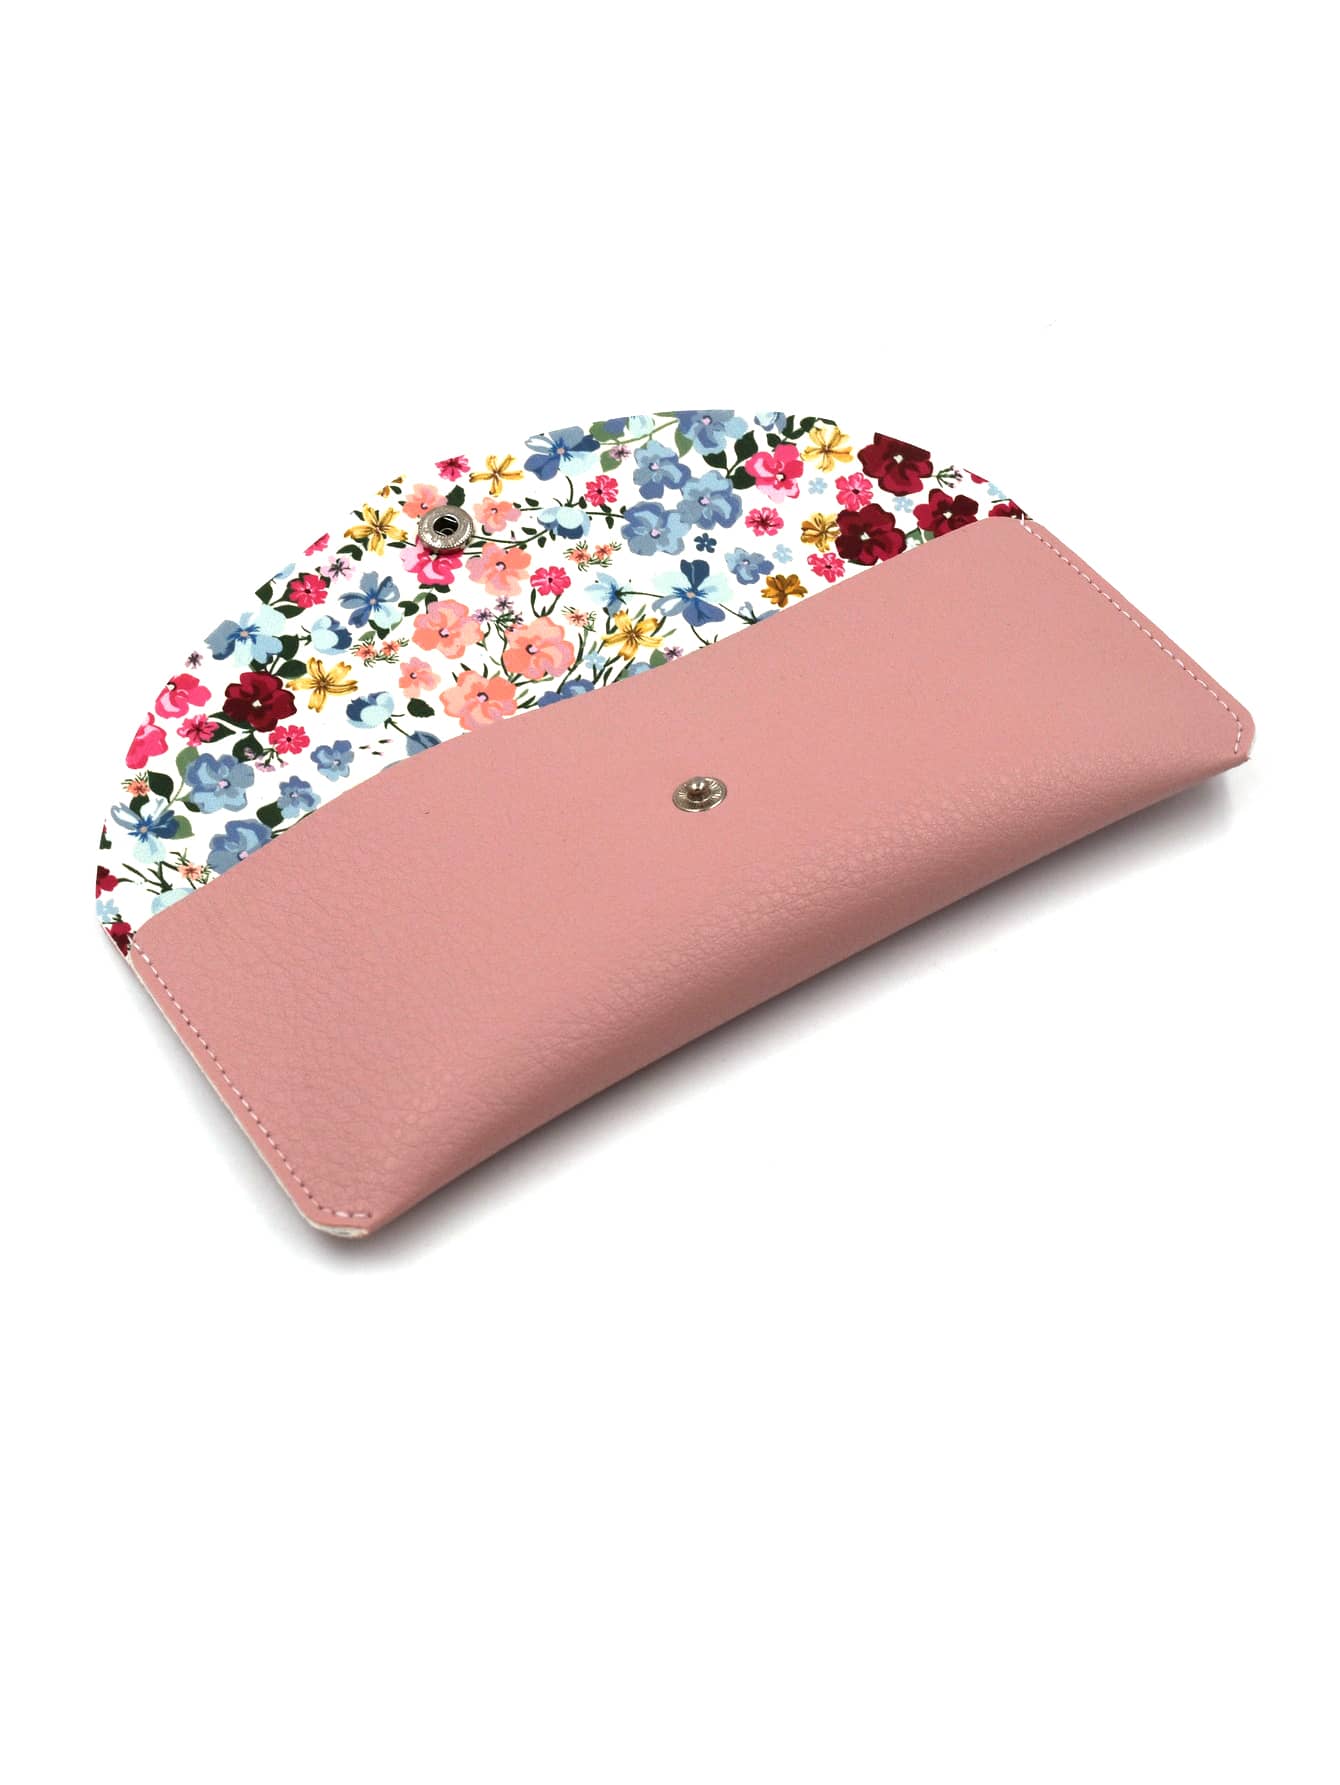 1 шт. модная женская сумка ярких цветов с цветочным узором и кнопками, розовый